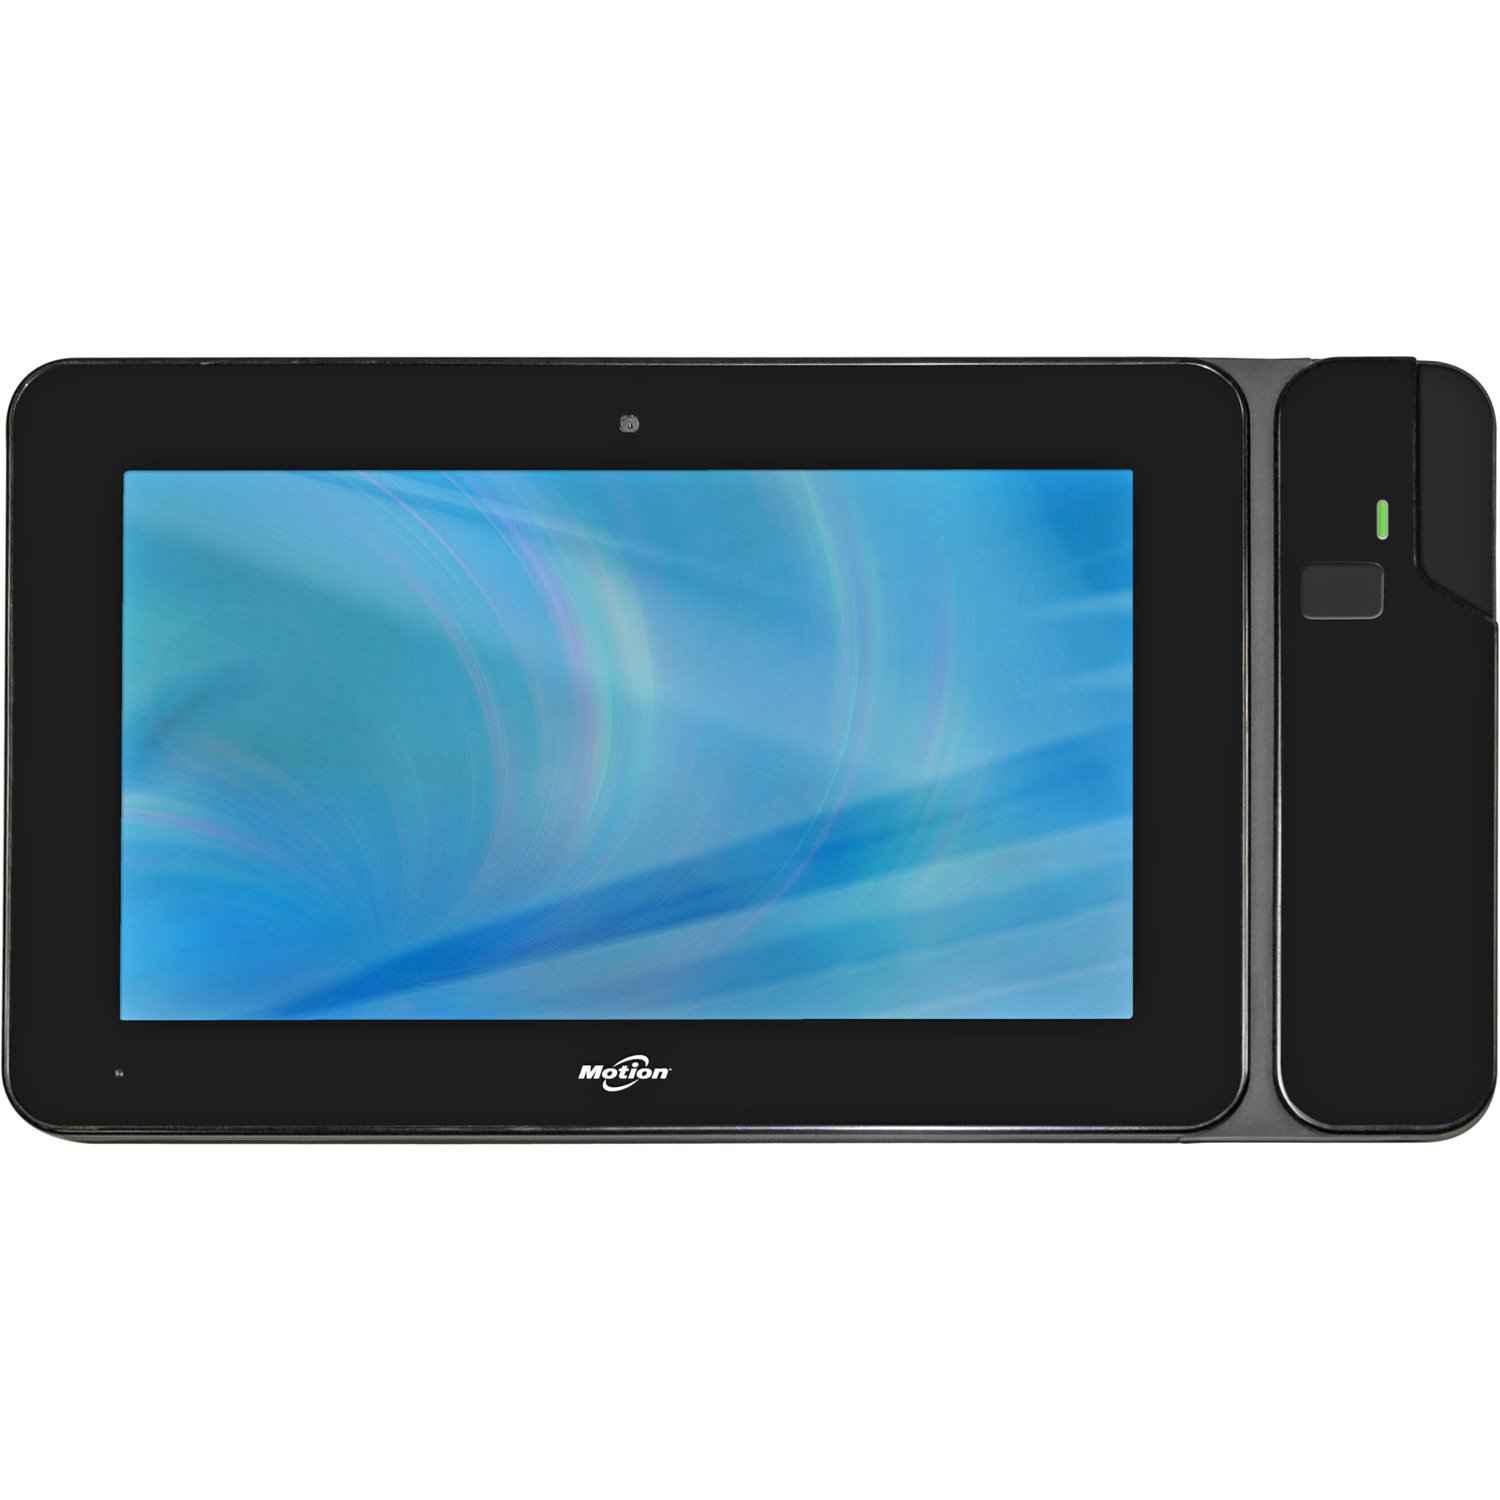 Motion CL CL910 SlateMate Rugged Tablet - 10.1" HD - Intel NM10 Express - 2 GB - 64 GB SSD - Windows 7 Professional 32-bit